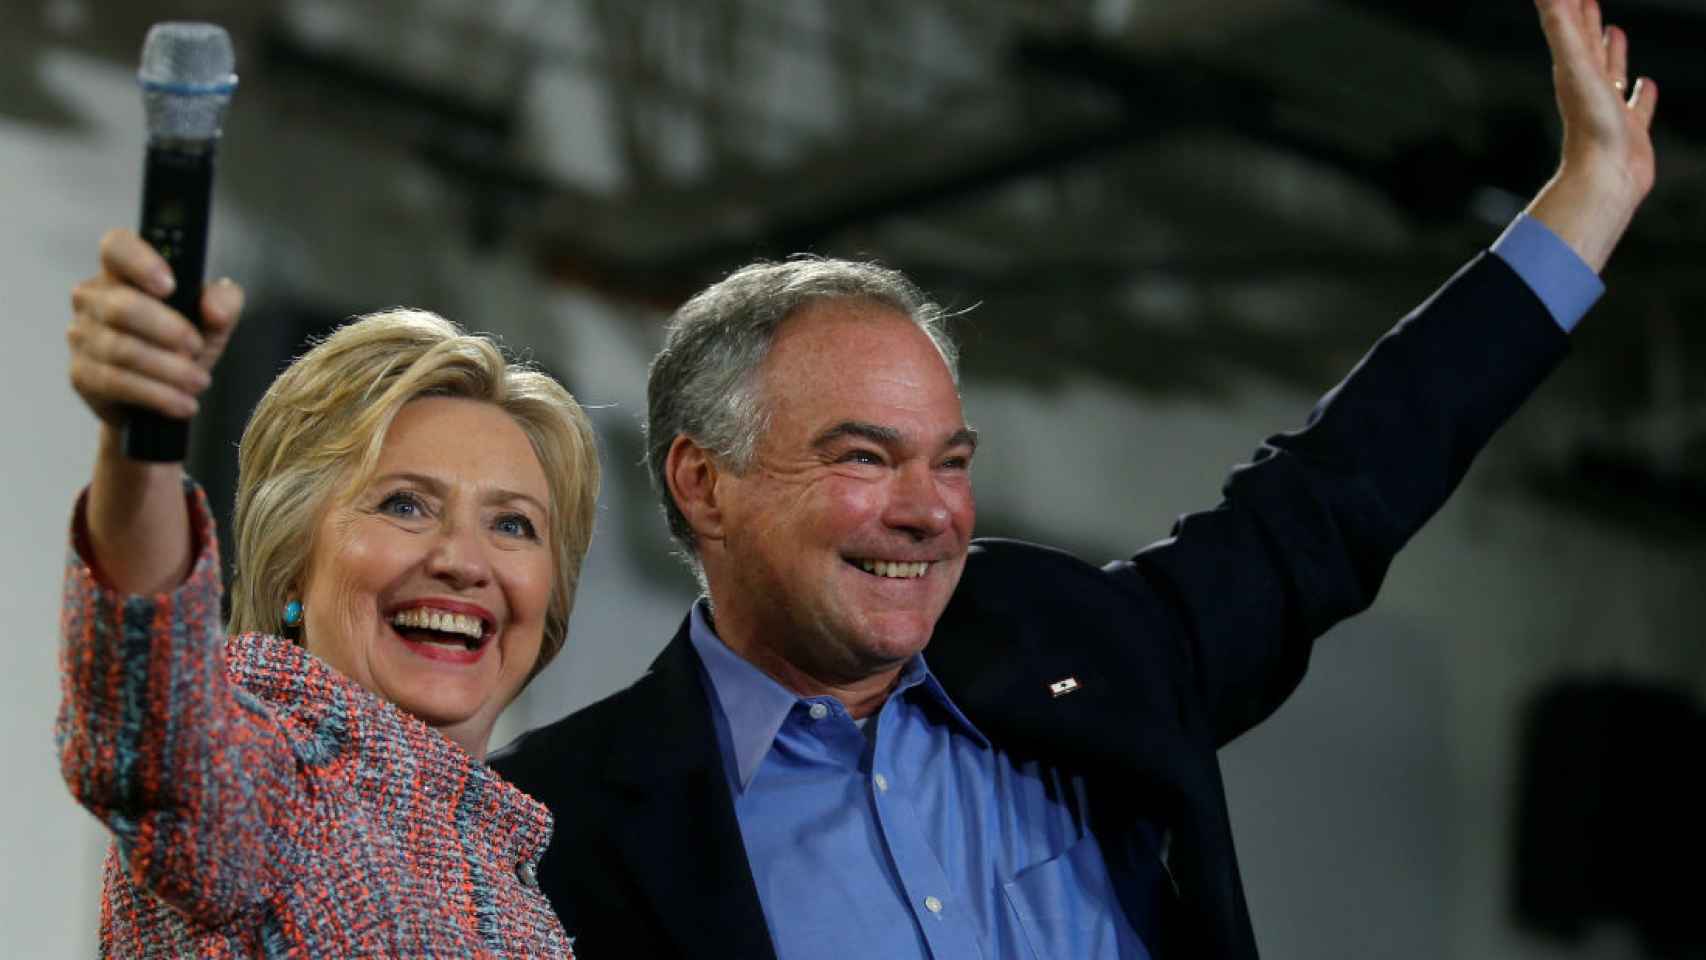 Hillary Clinton, en una imagen junto a Tim Kaine hace unos días en Virginia